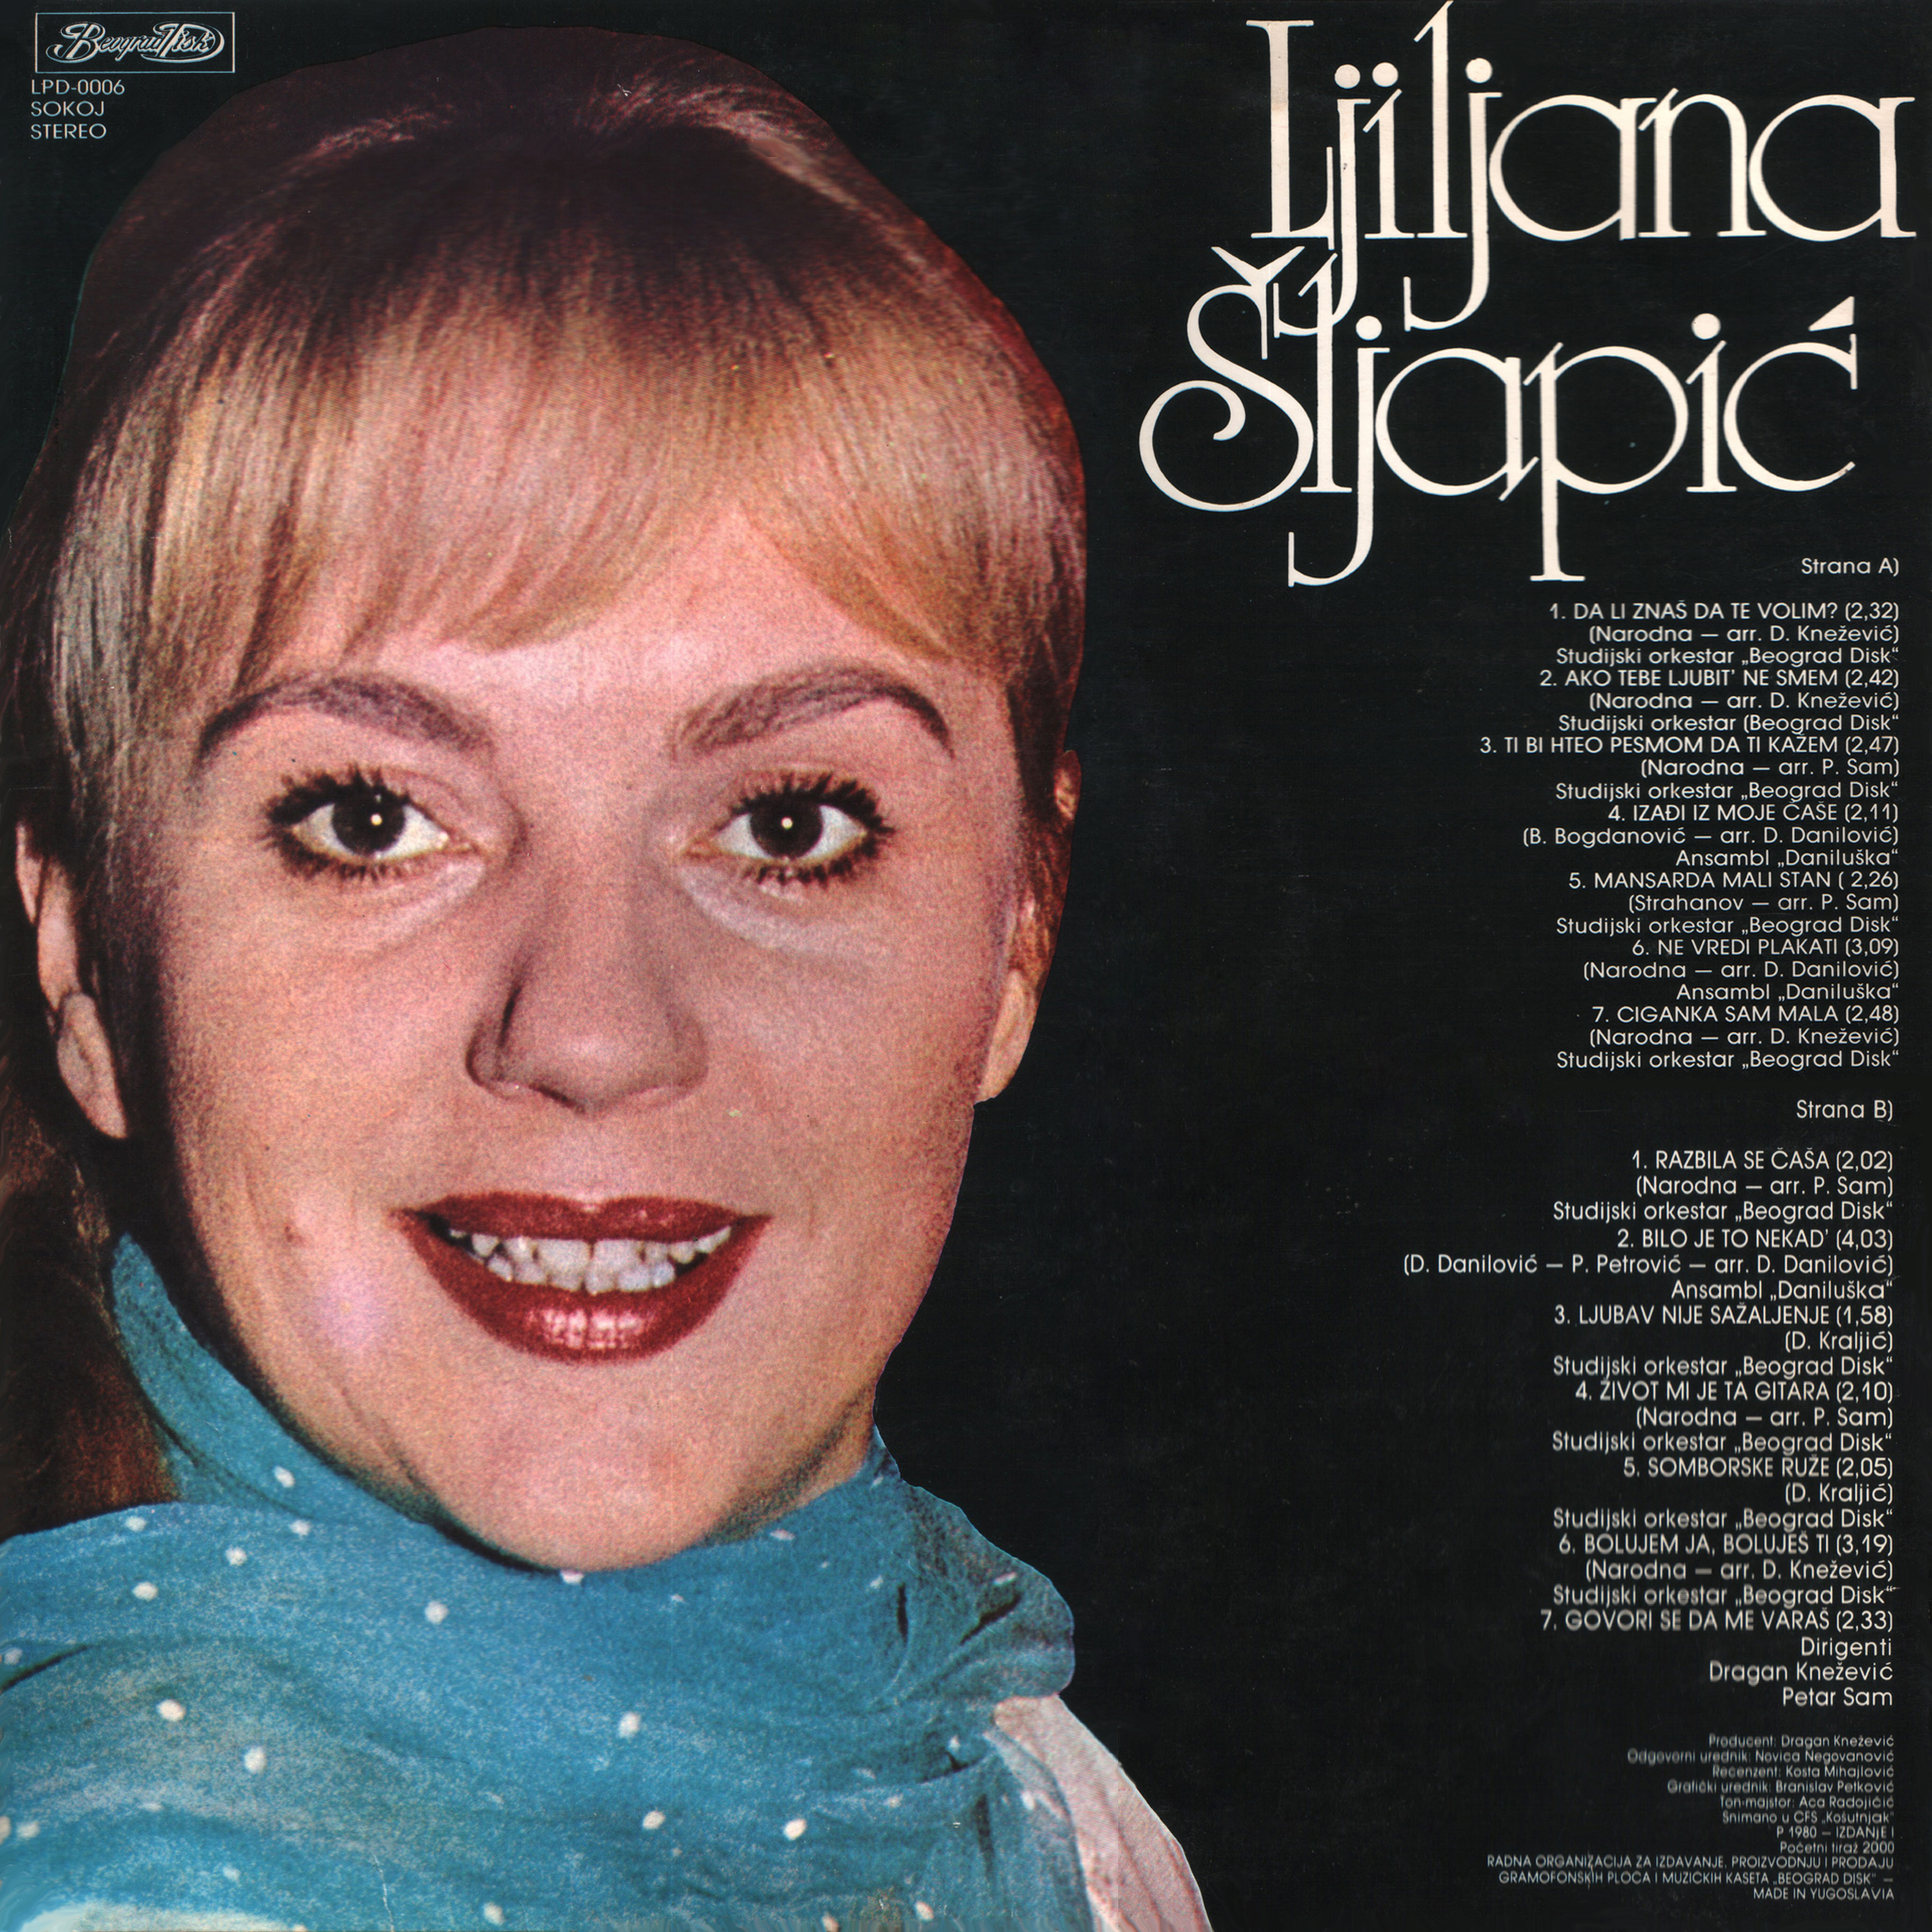 Ljiljana Sljapic 1980 Z